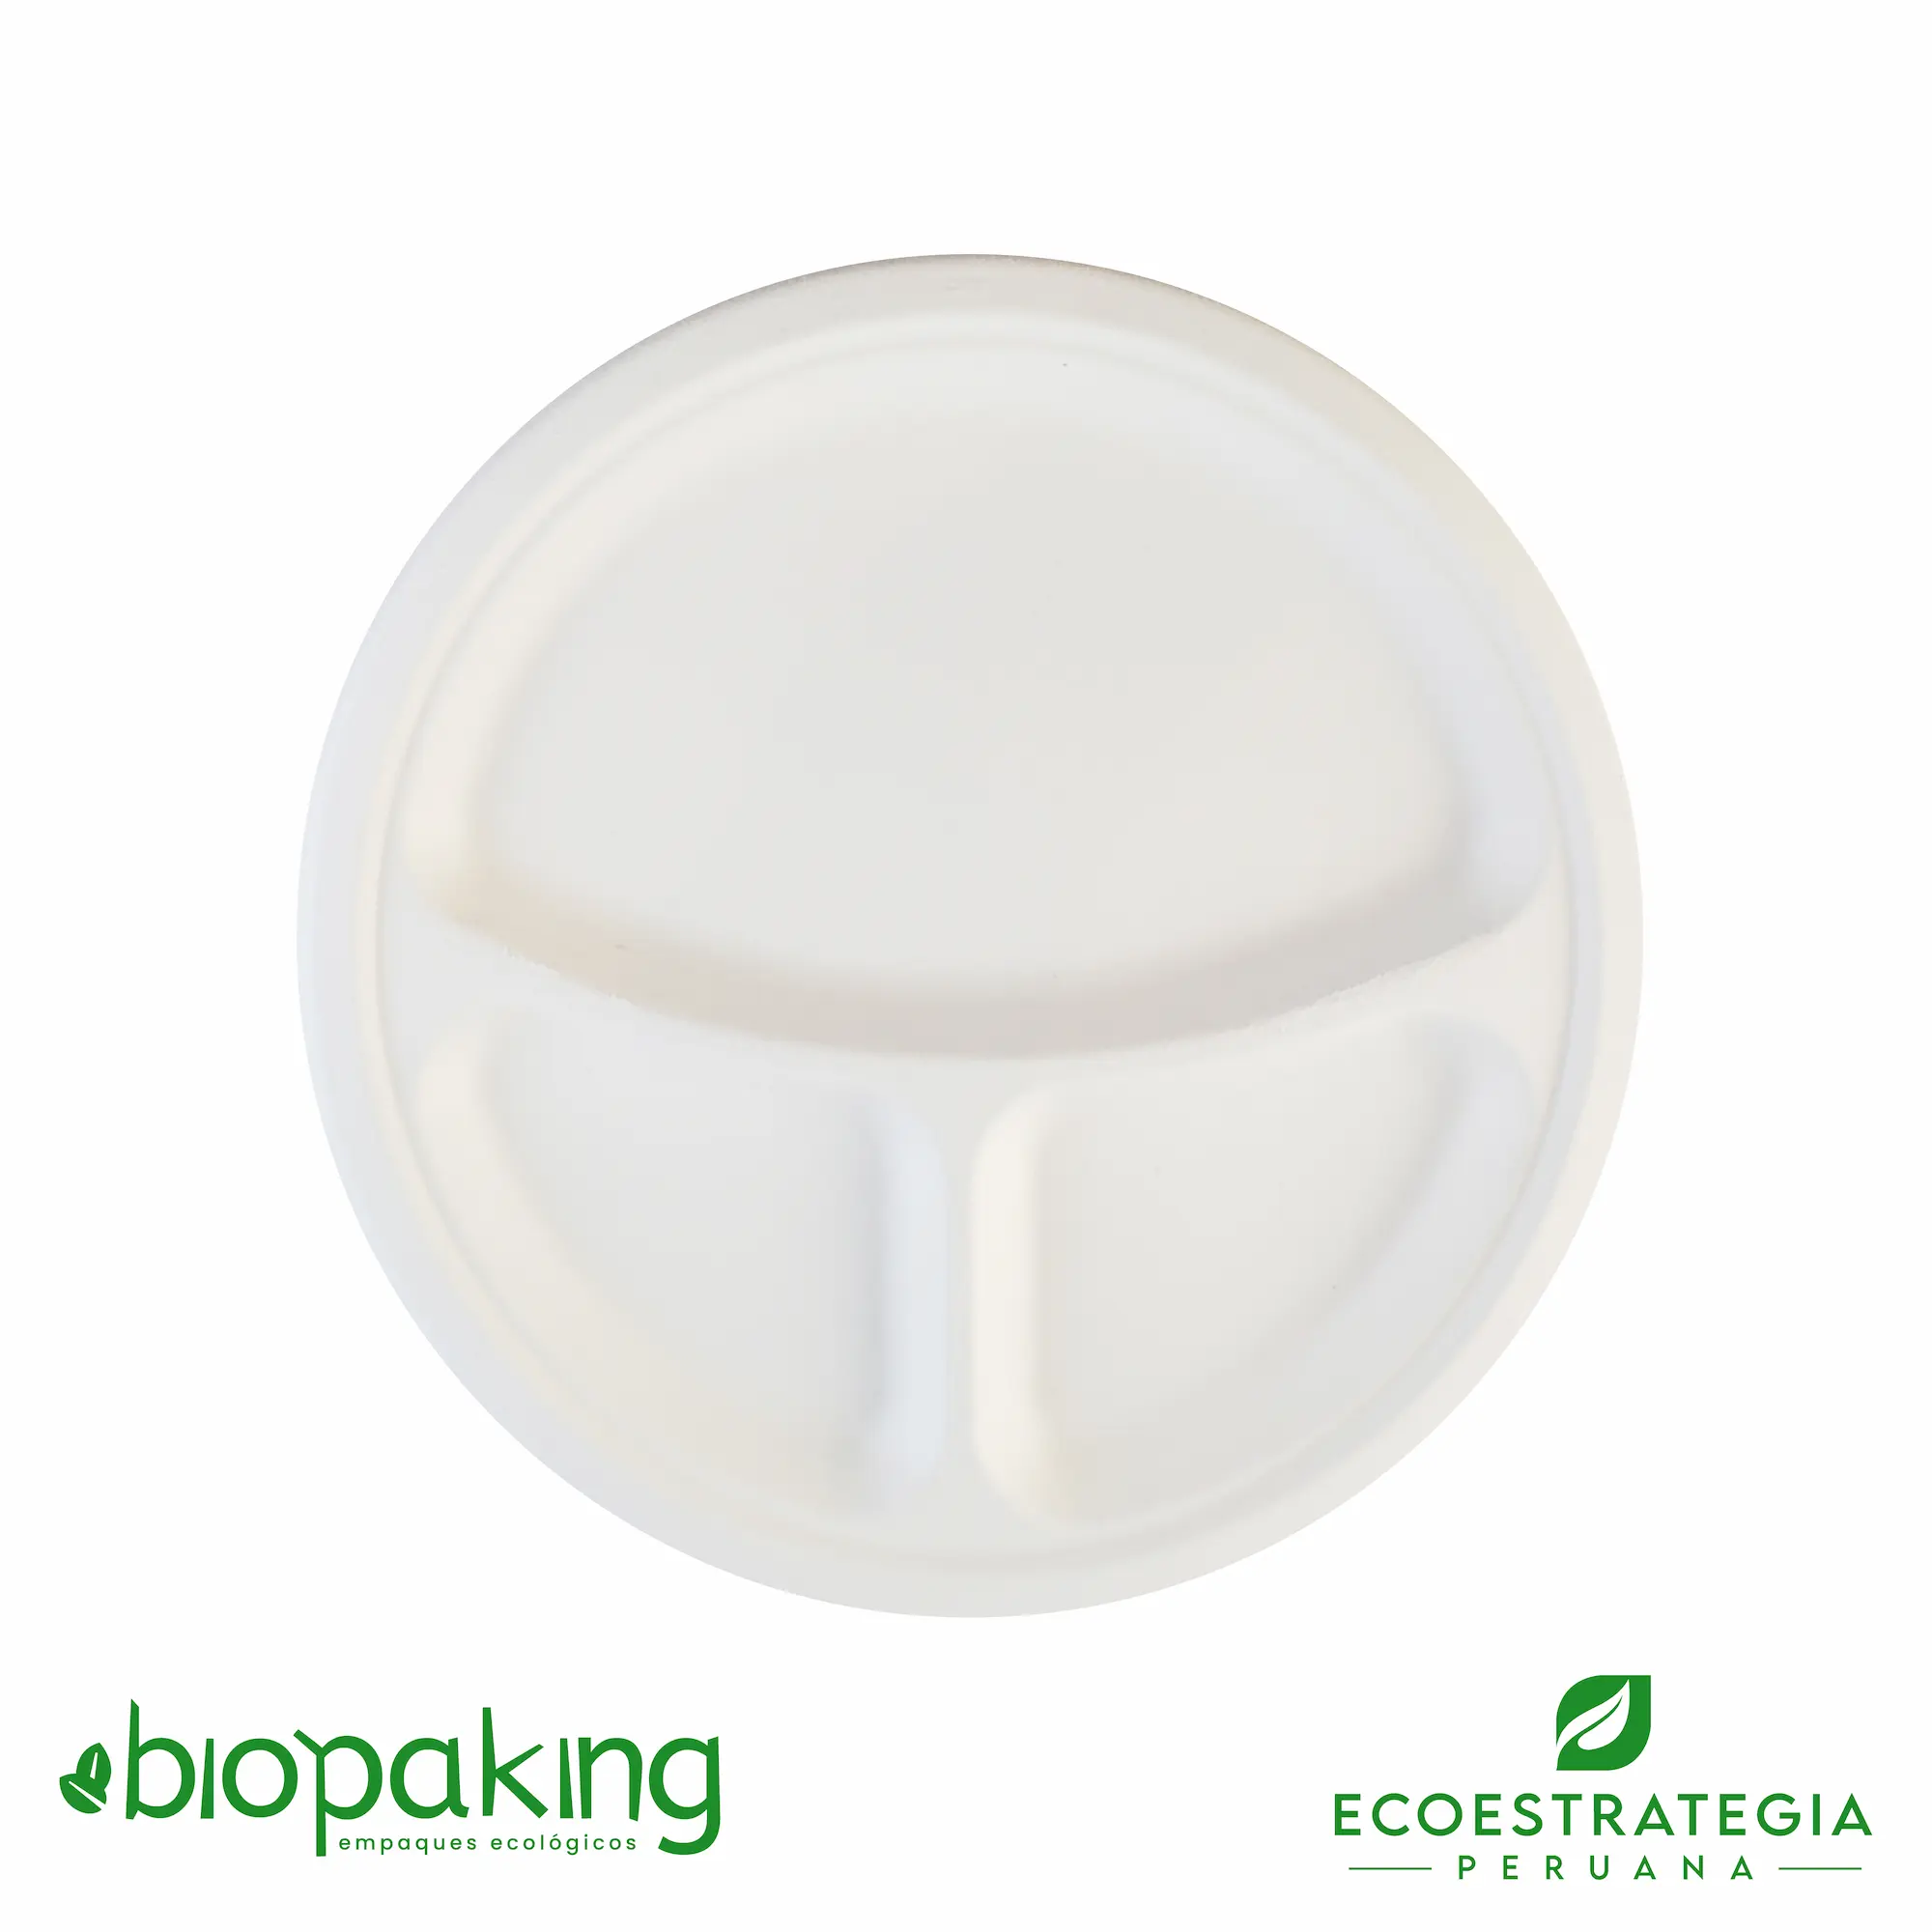 Este plato de 26 cm con division es un producto de materiales biodegradables, hecho a base de fibra de caña de azúcar. Cotiza envases, empaques y tapers bio